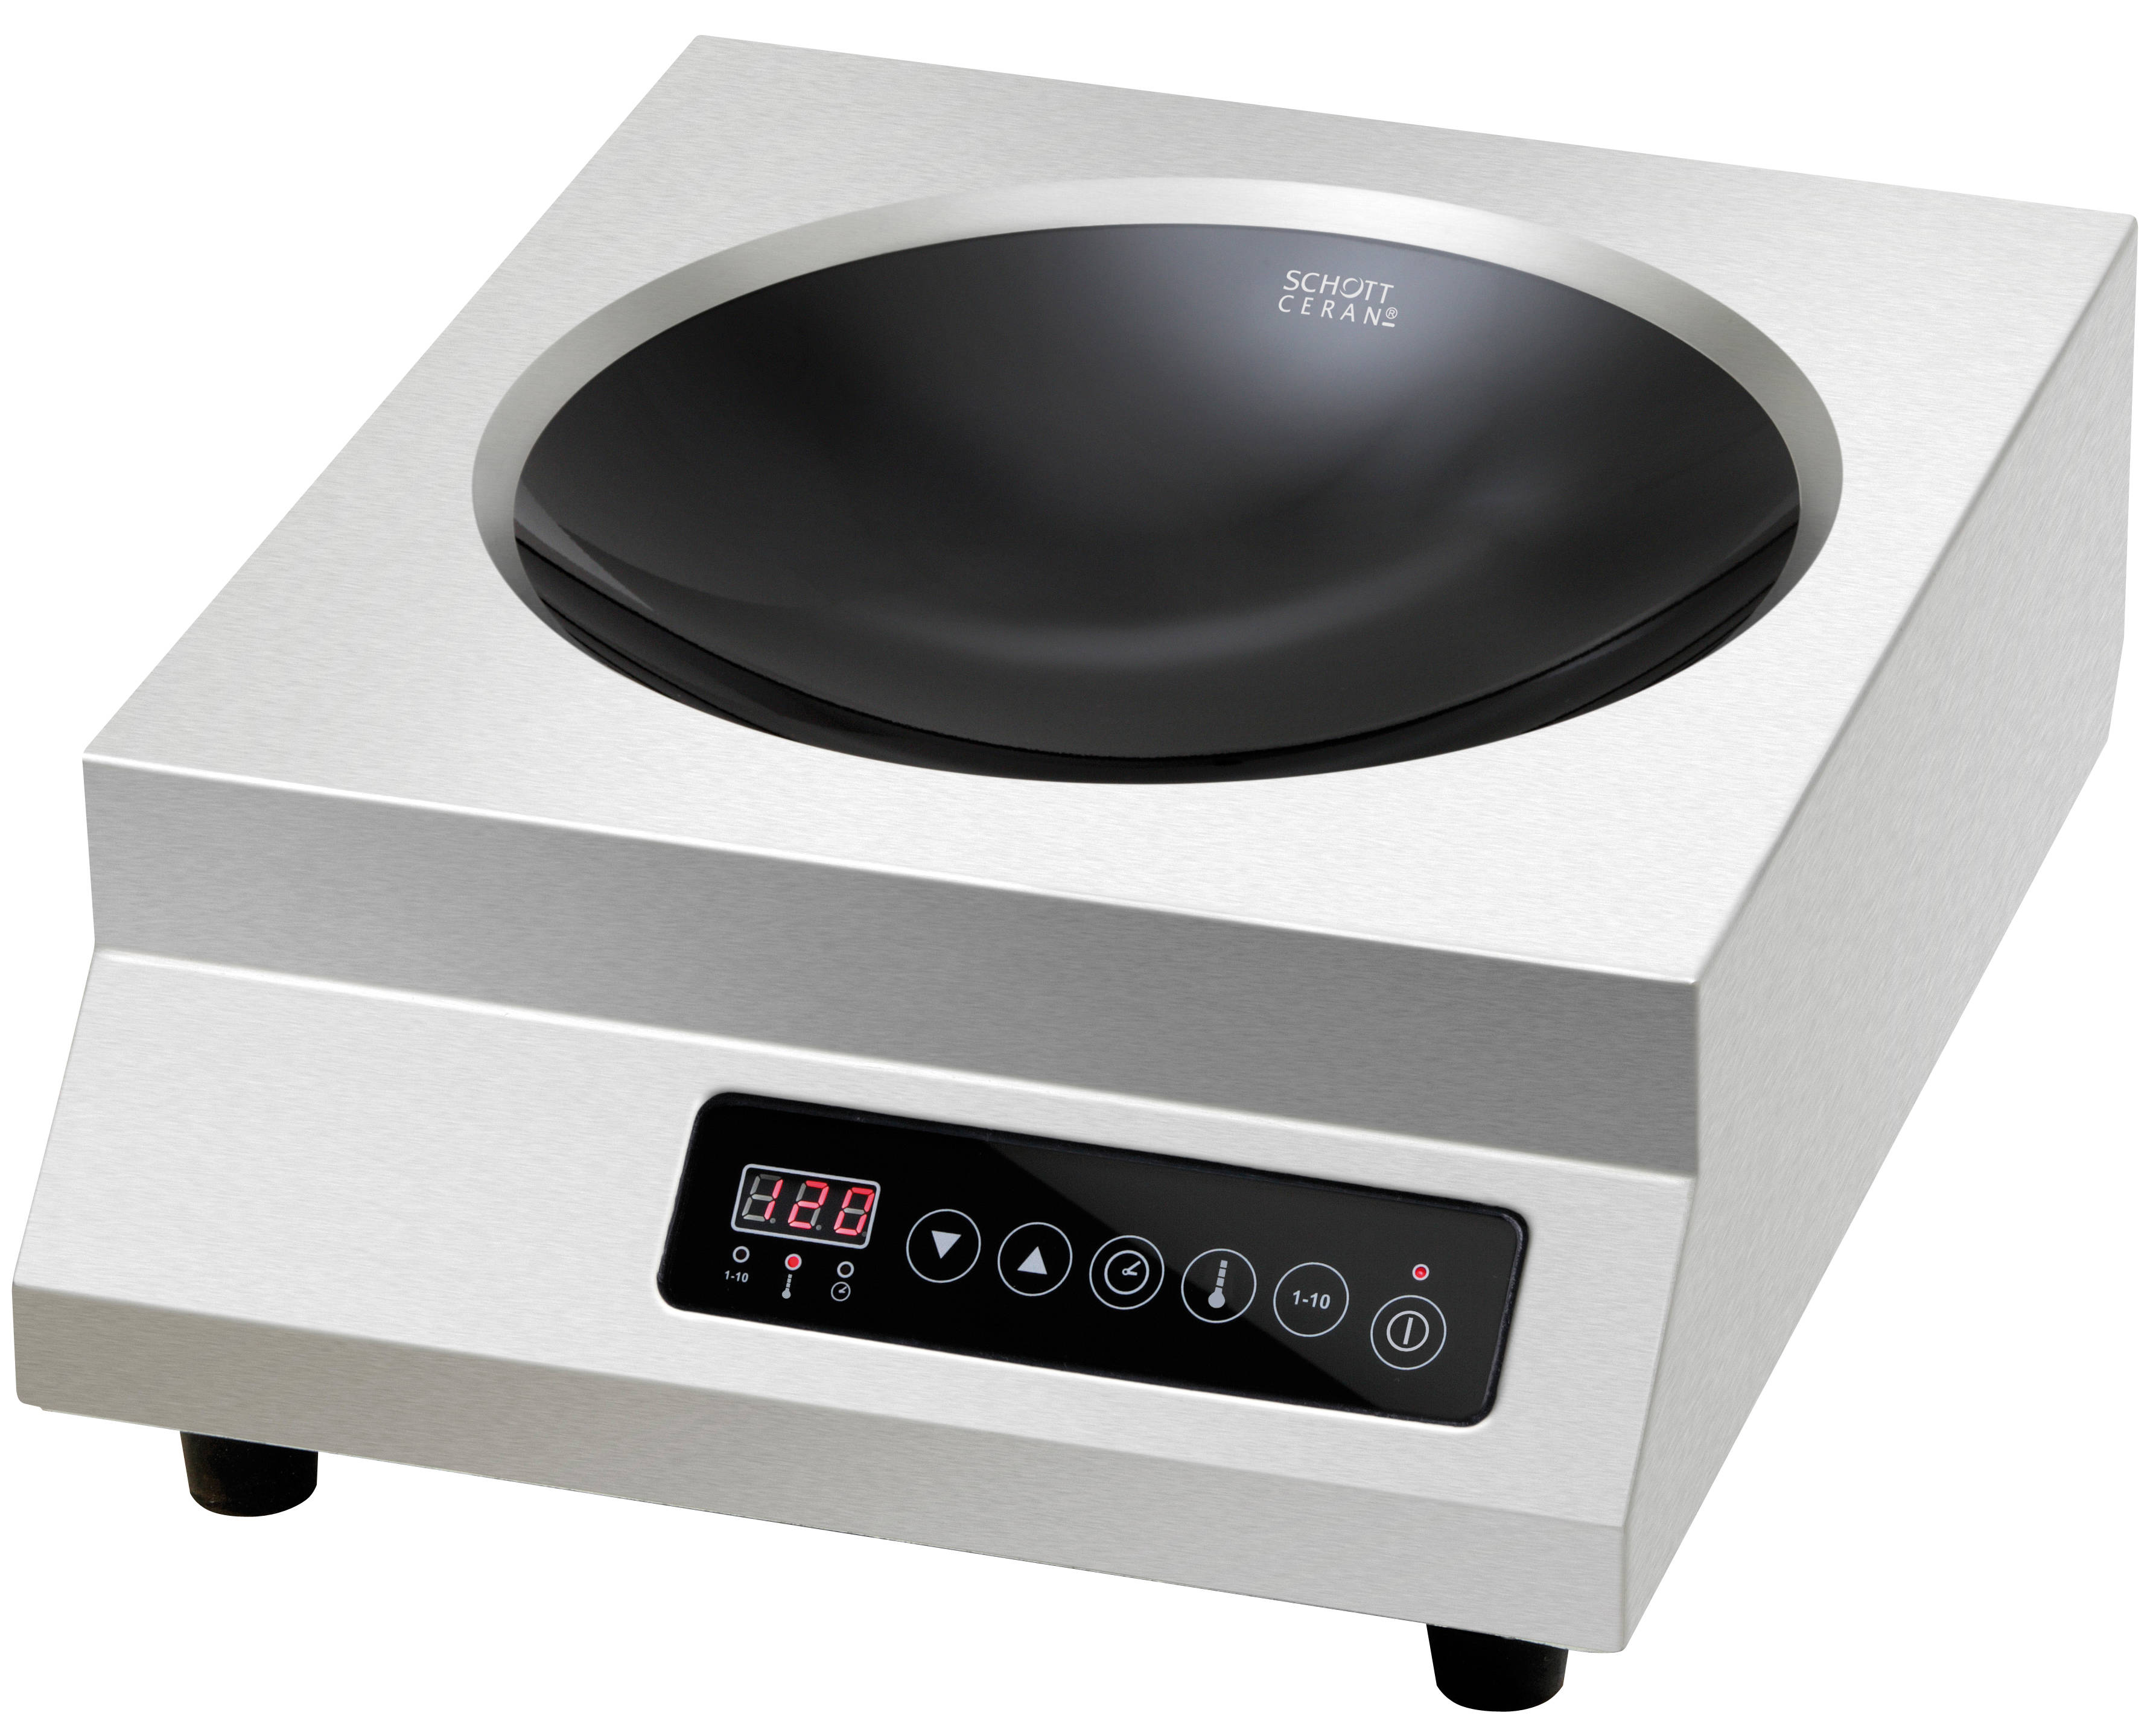 Réchaud wok à induction IW35 3500W - CHR MARKET